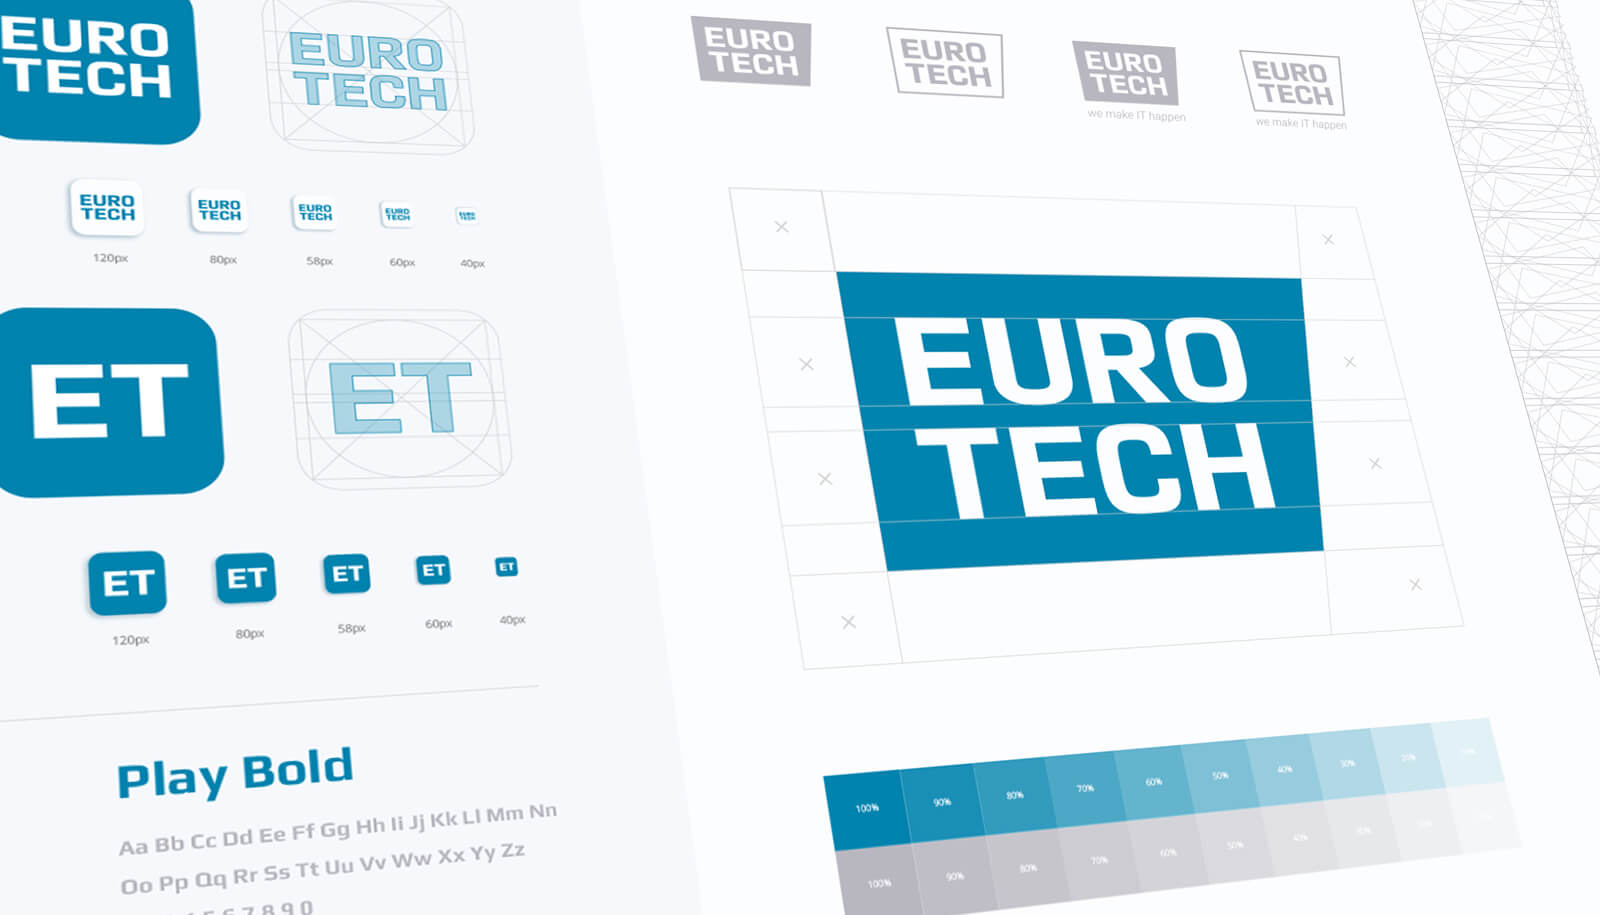 Eurotech Branding